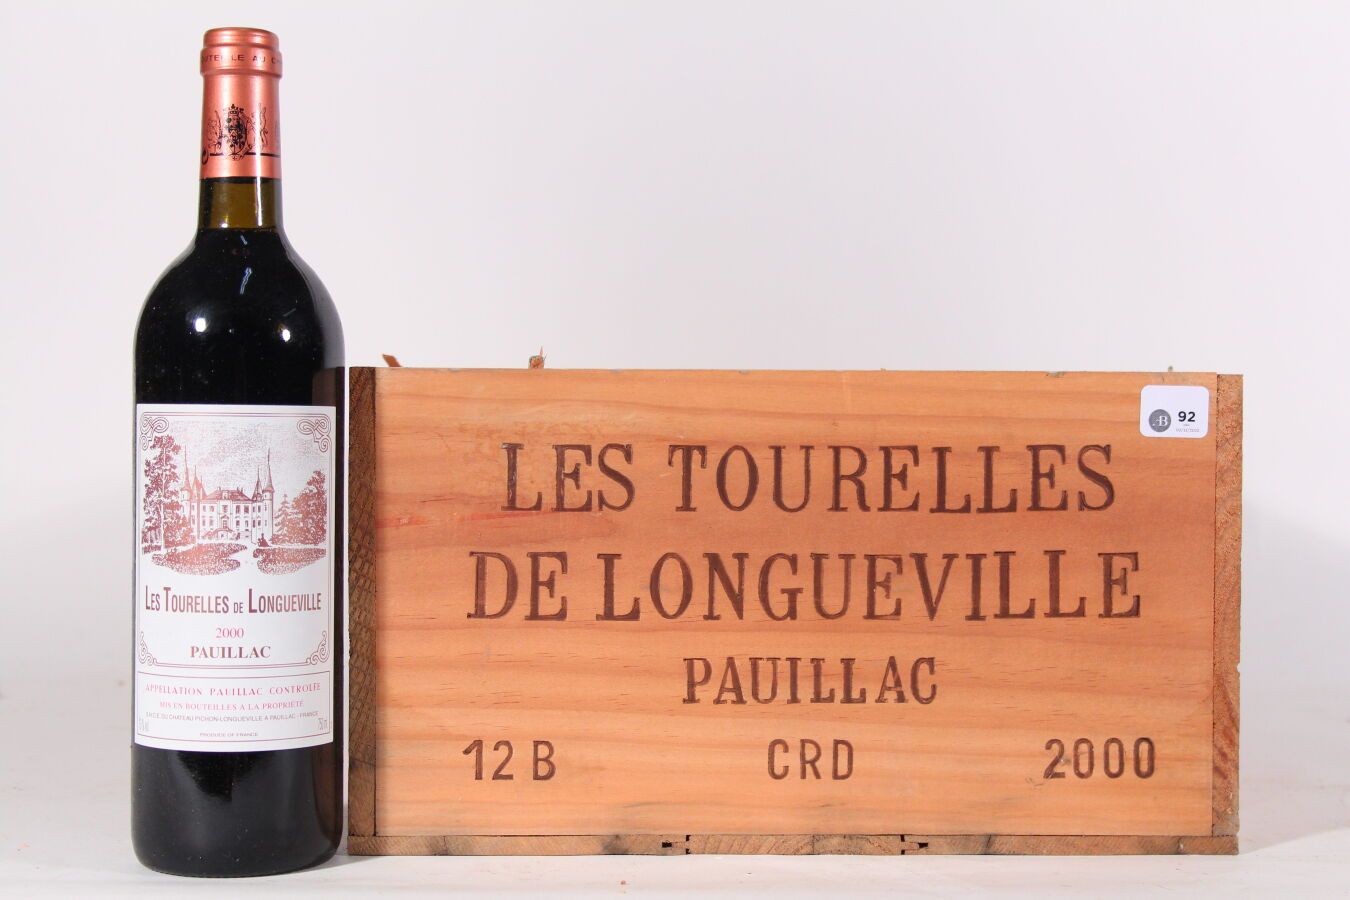 Null 2000 - Les Tourelles de Longueville
Pauillac Rouge - 12 blles CBO